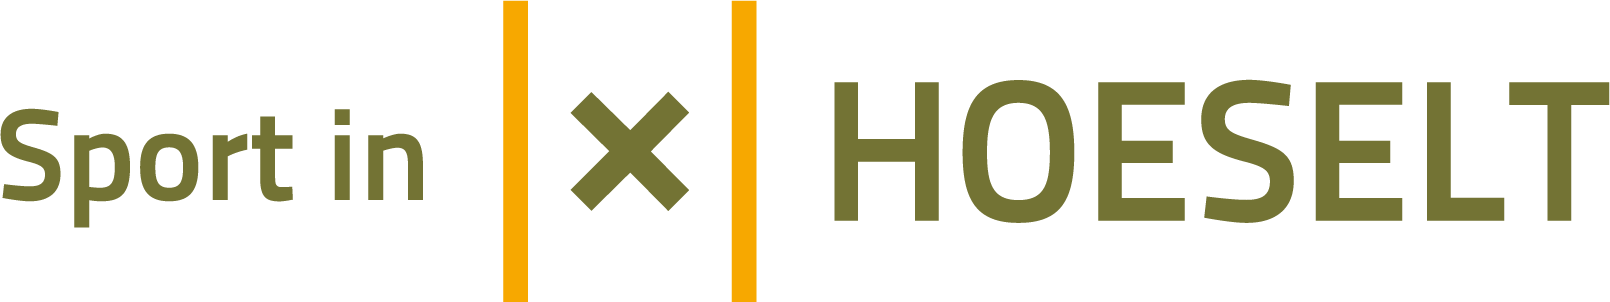 sport-in-hoeselt_logo